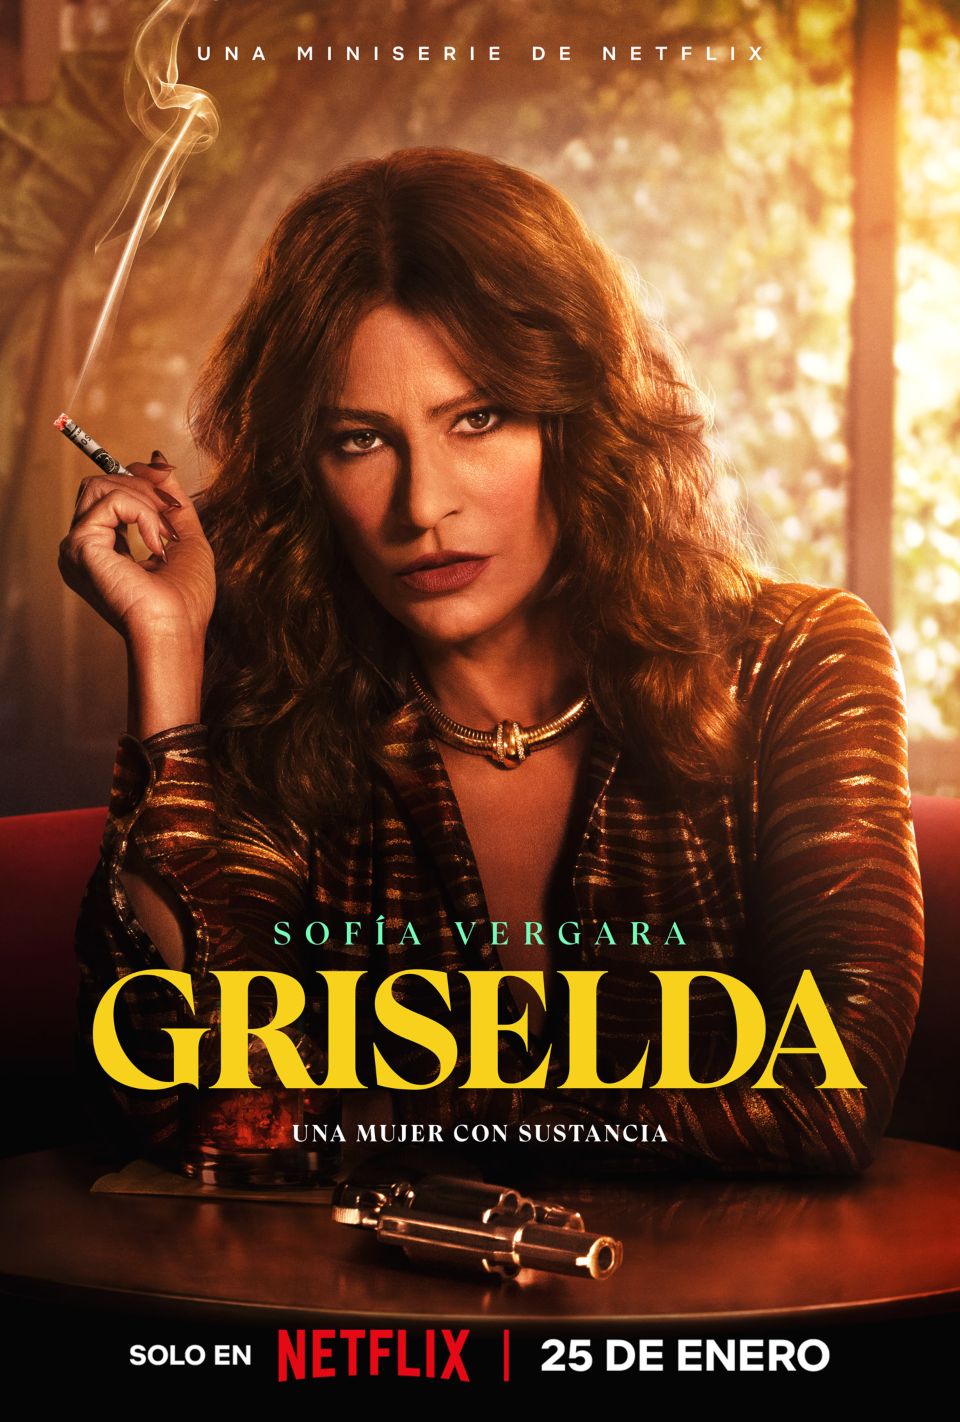 El tráiler oficial de Griselda ya está disponible